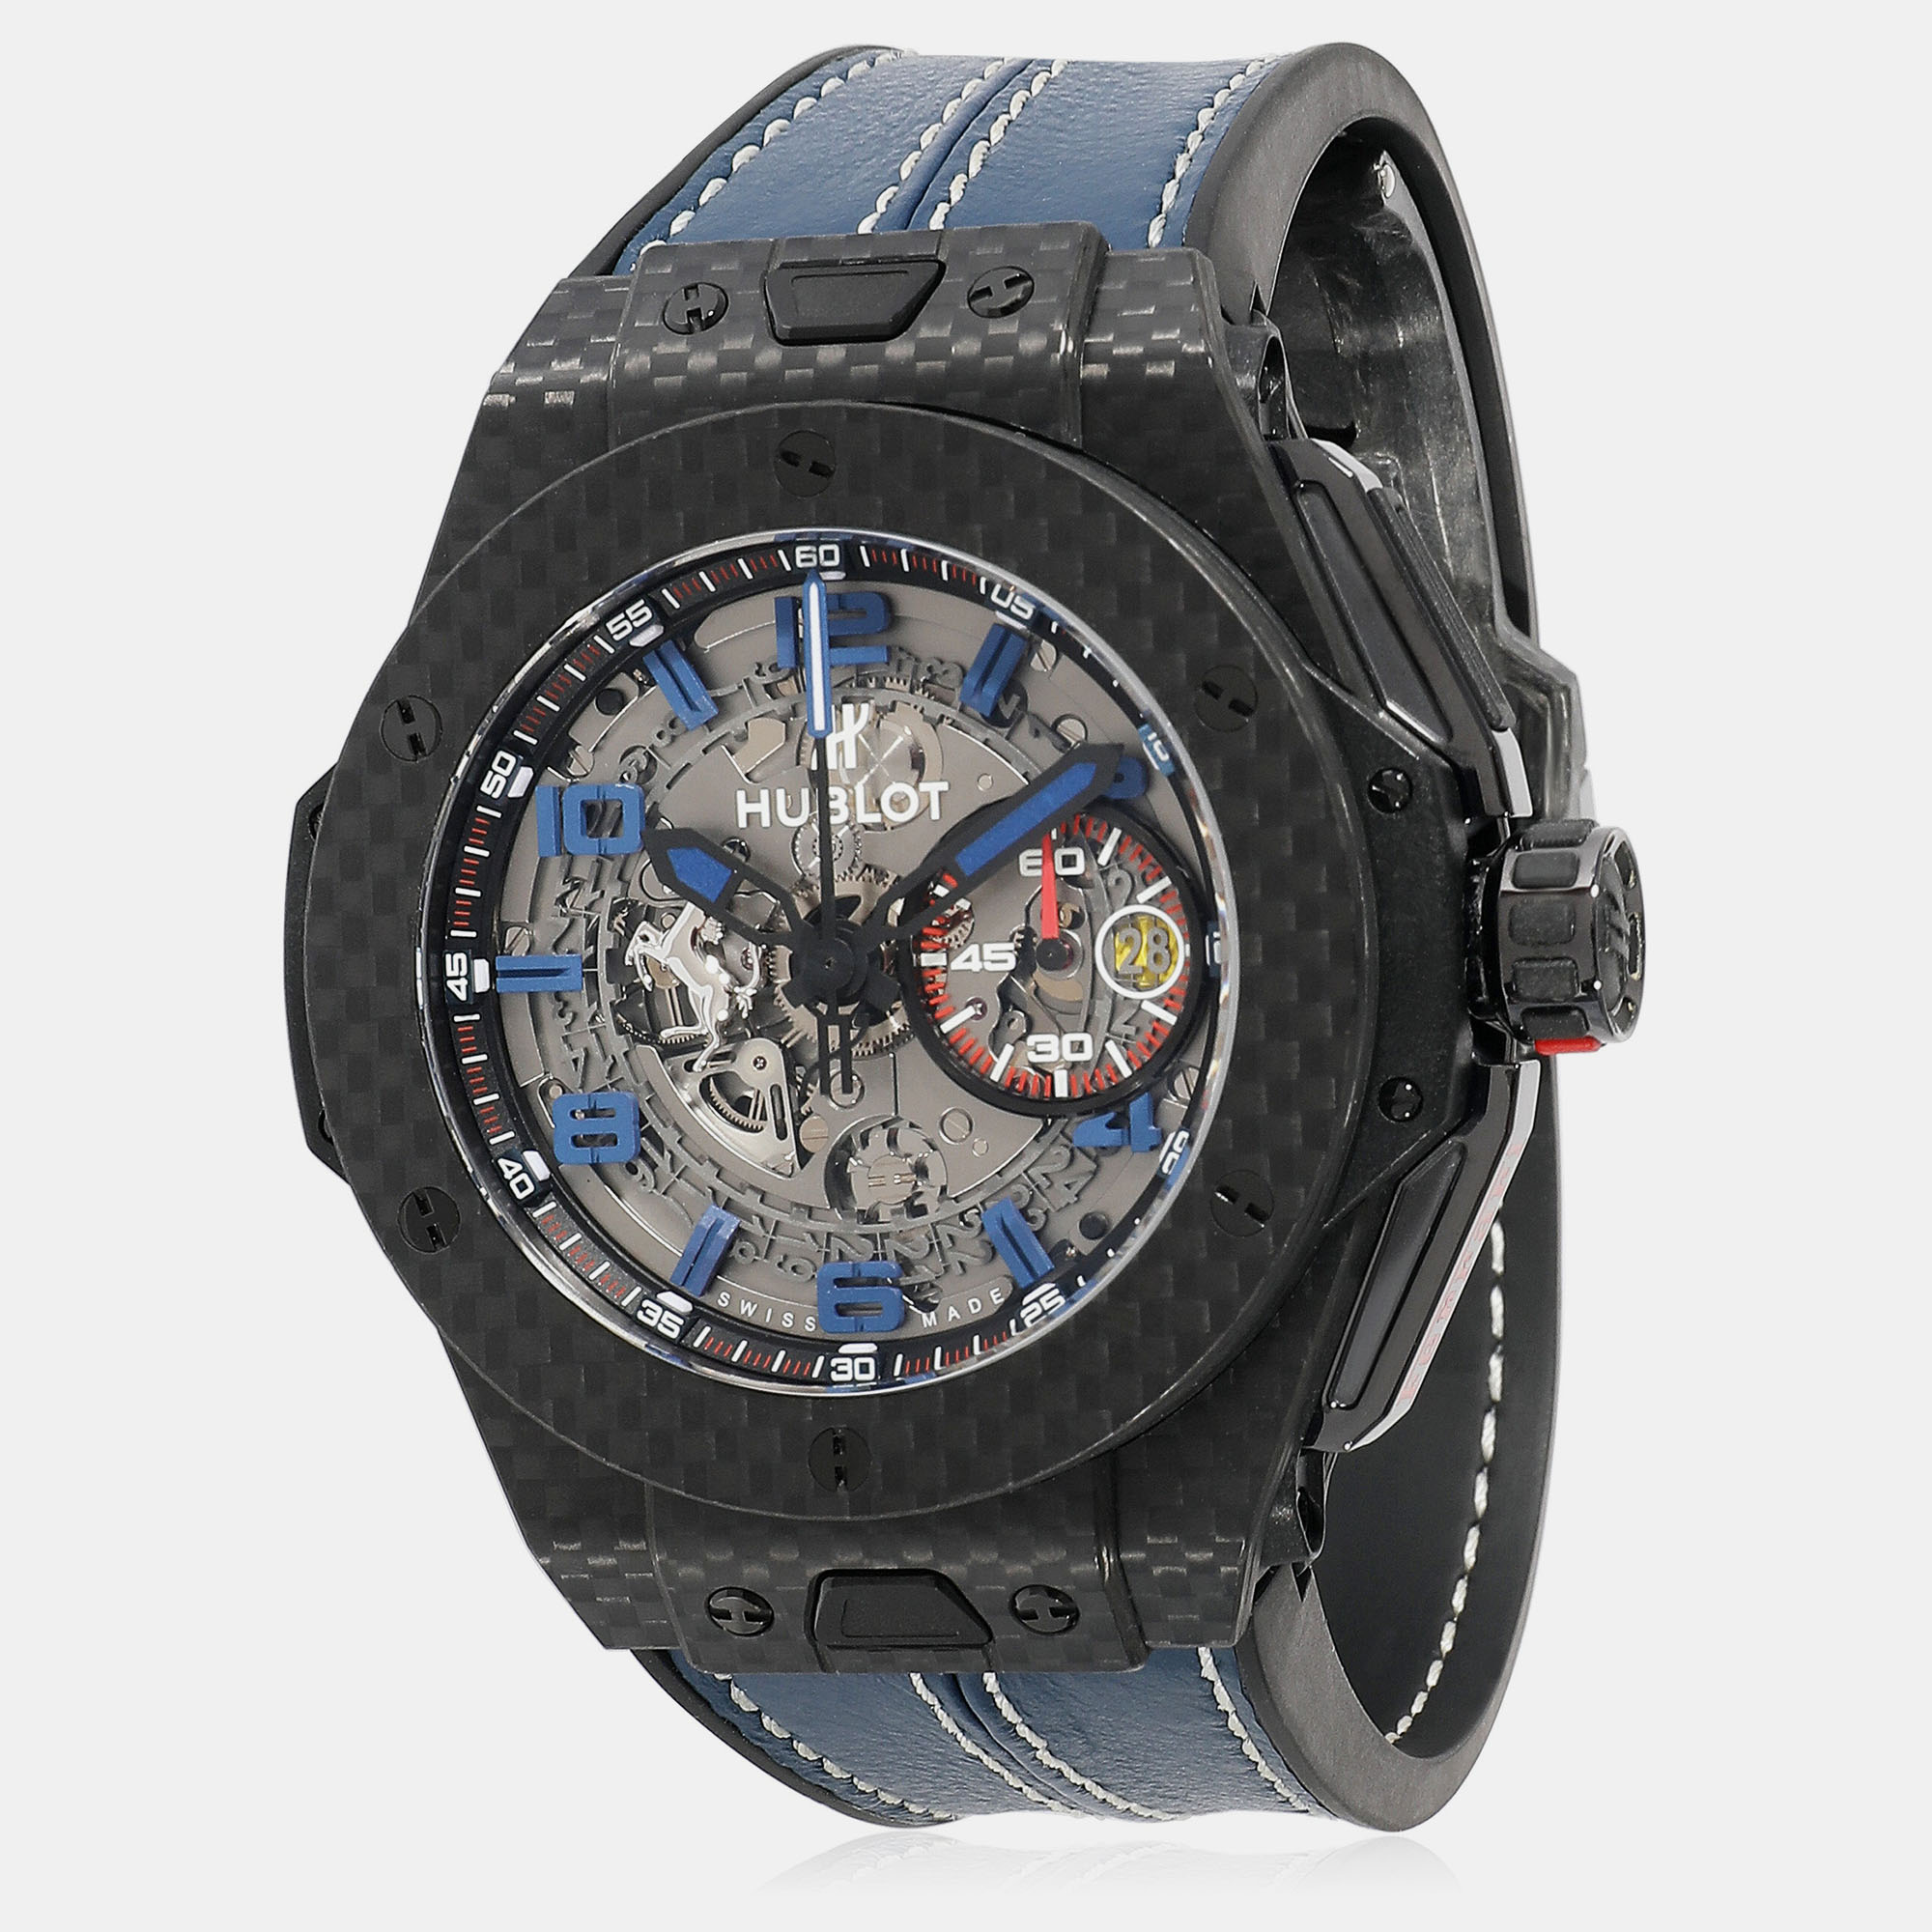 Pre-owned Hublot Grey Carbon Fiber Big Bang Ferrari 401.qx.0123.vr.fsx14 Automatic Men's Wristwatch 45 Mm